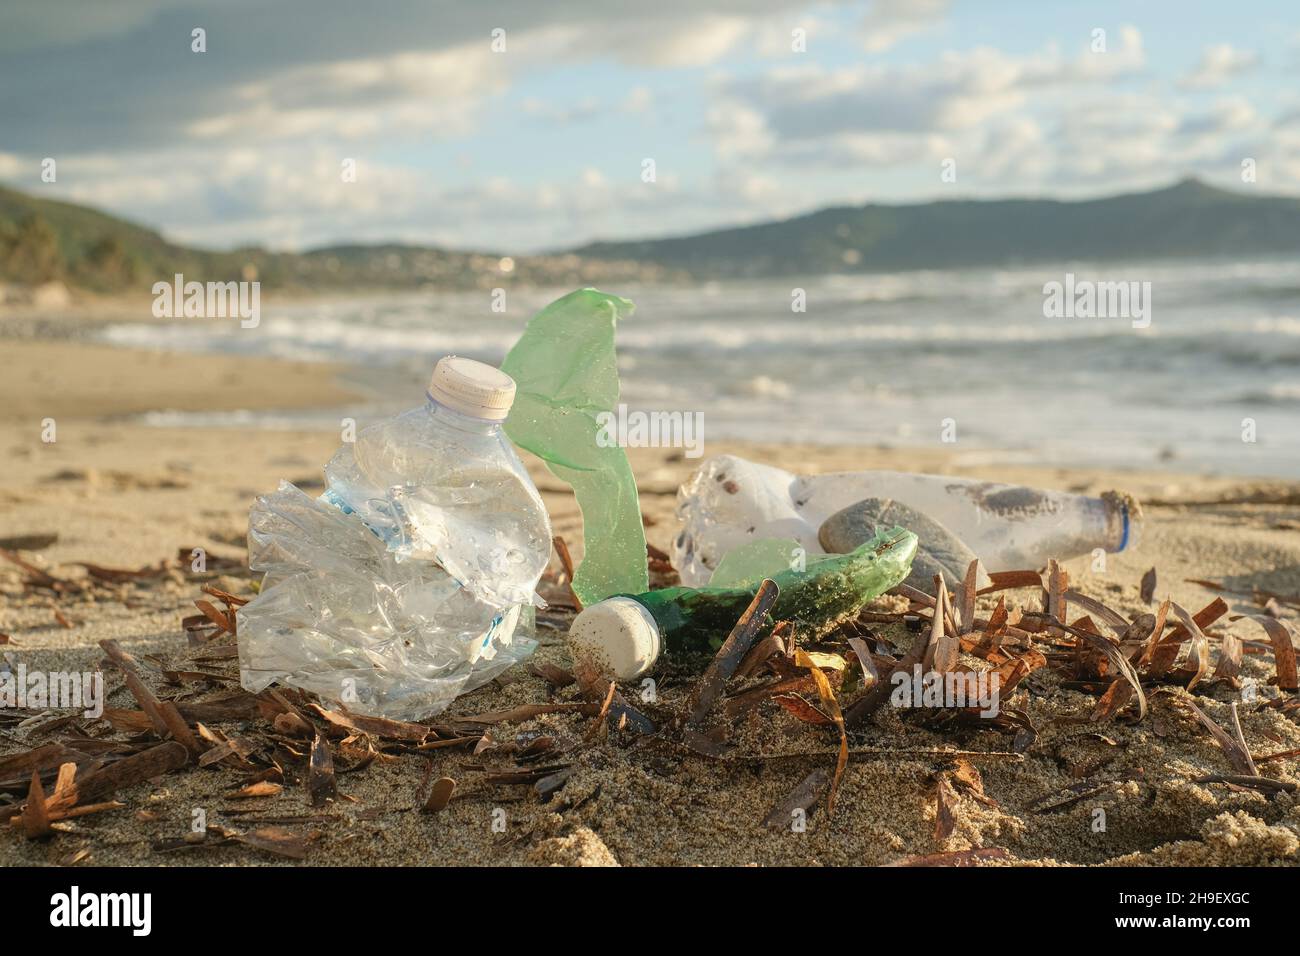 Bottiglie di plastica gettate sull'inquinamento contaminato habitat marino marino marino, ambiente natura rifiuti Foto Stock